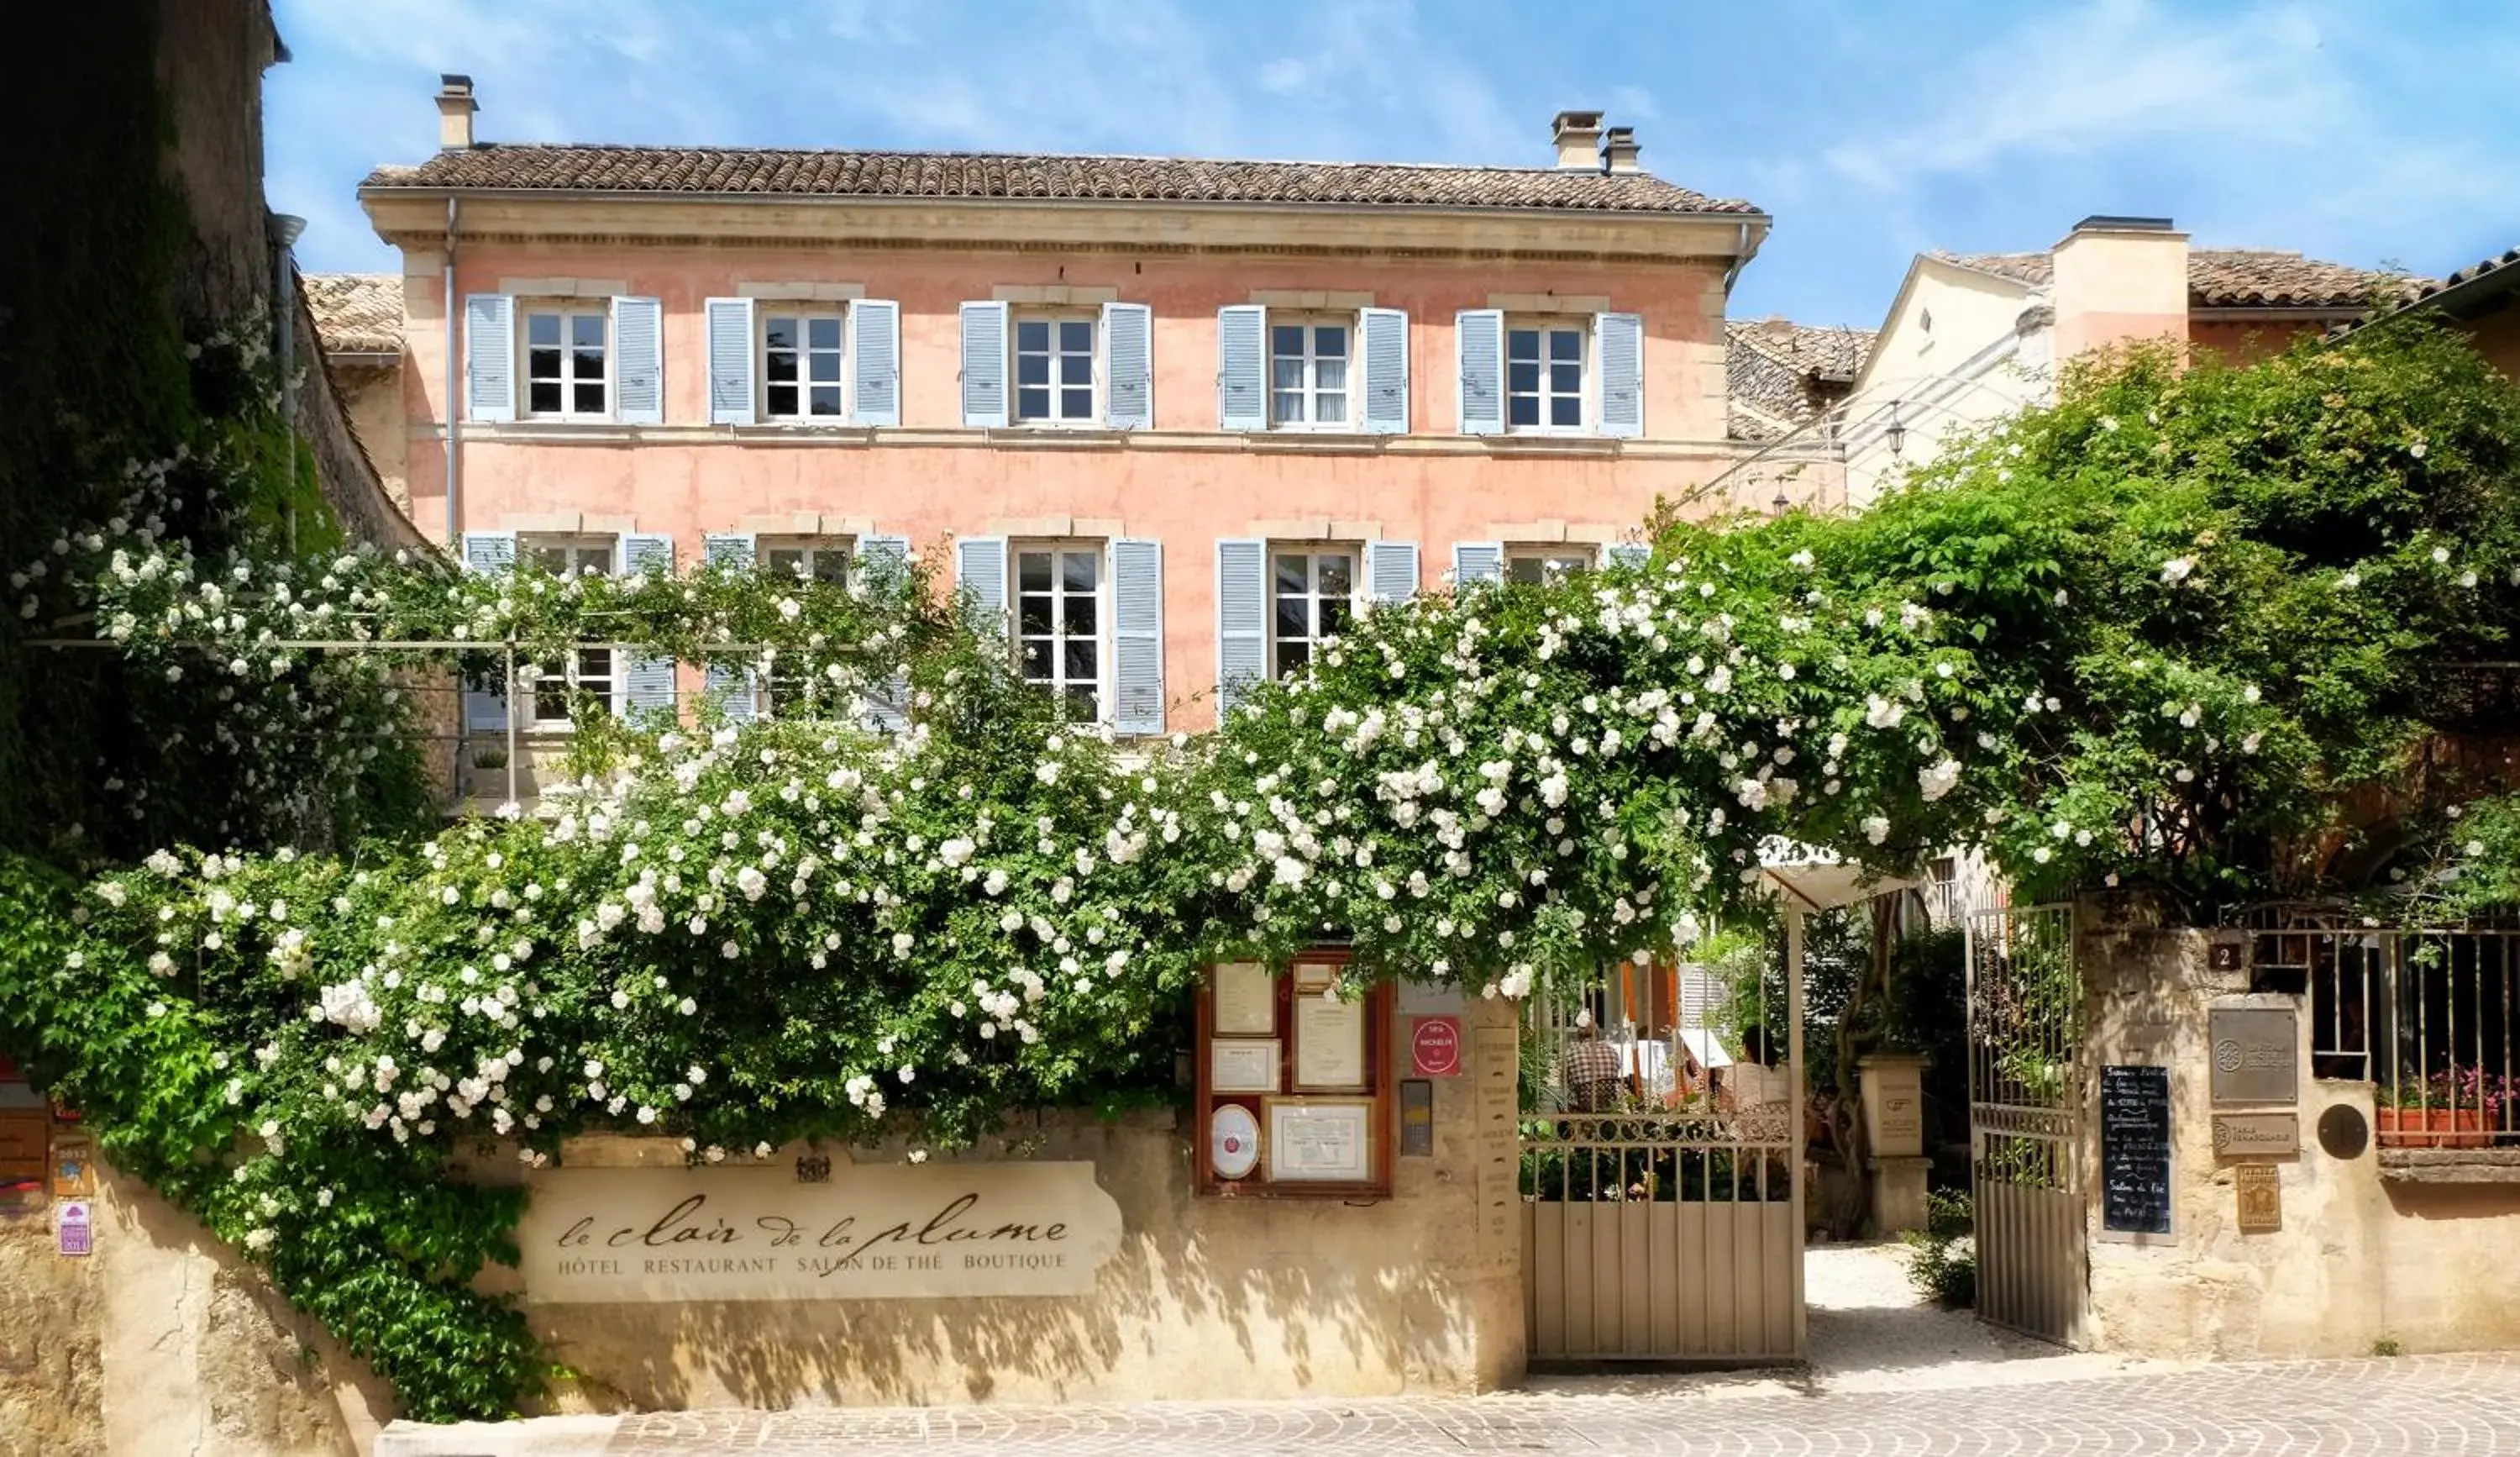 Property Building in Le Clair de la Plume - Les Collectionneurs